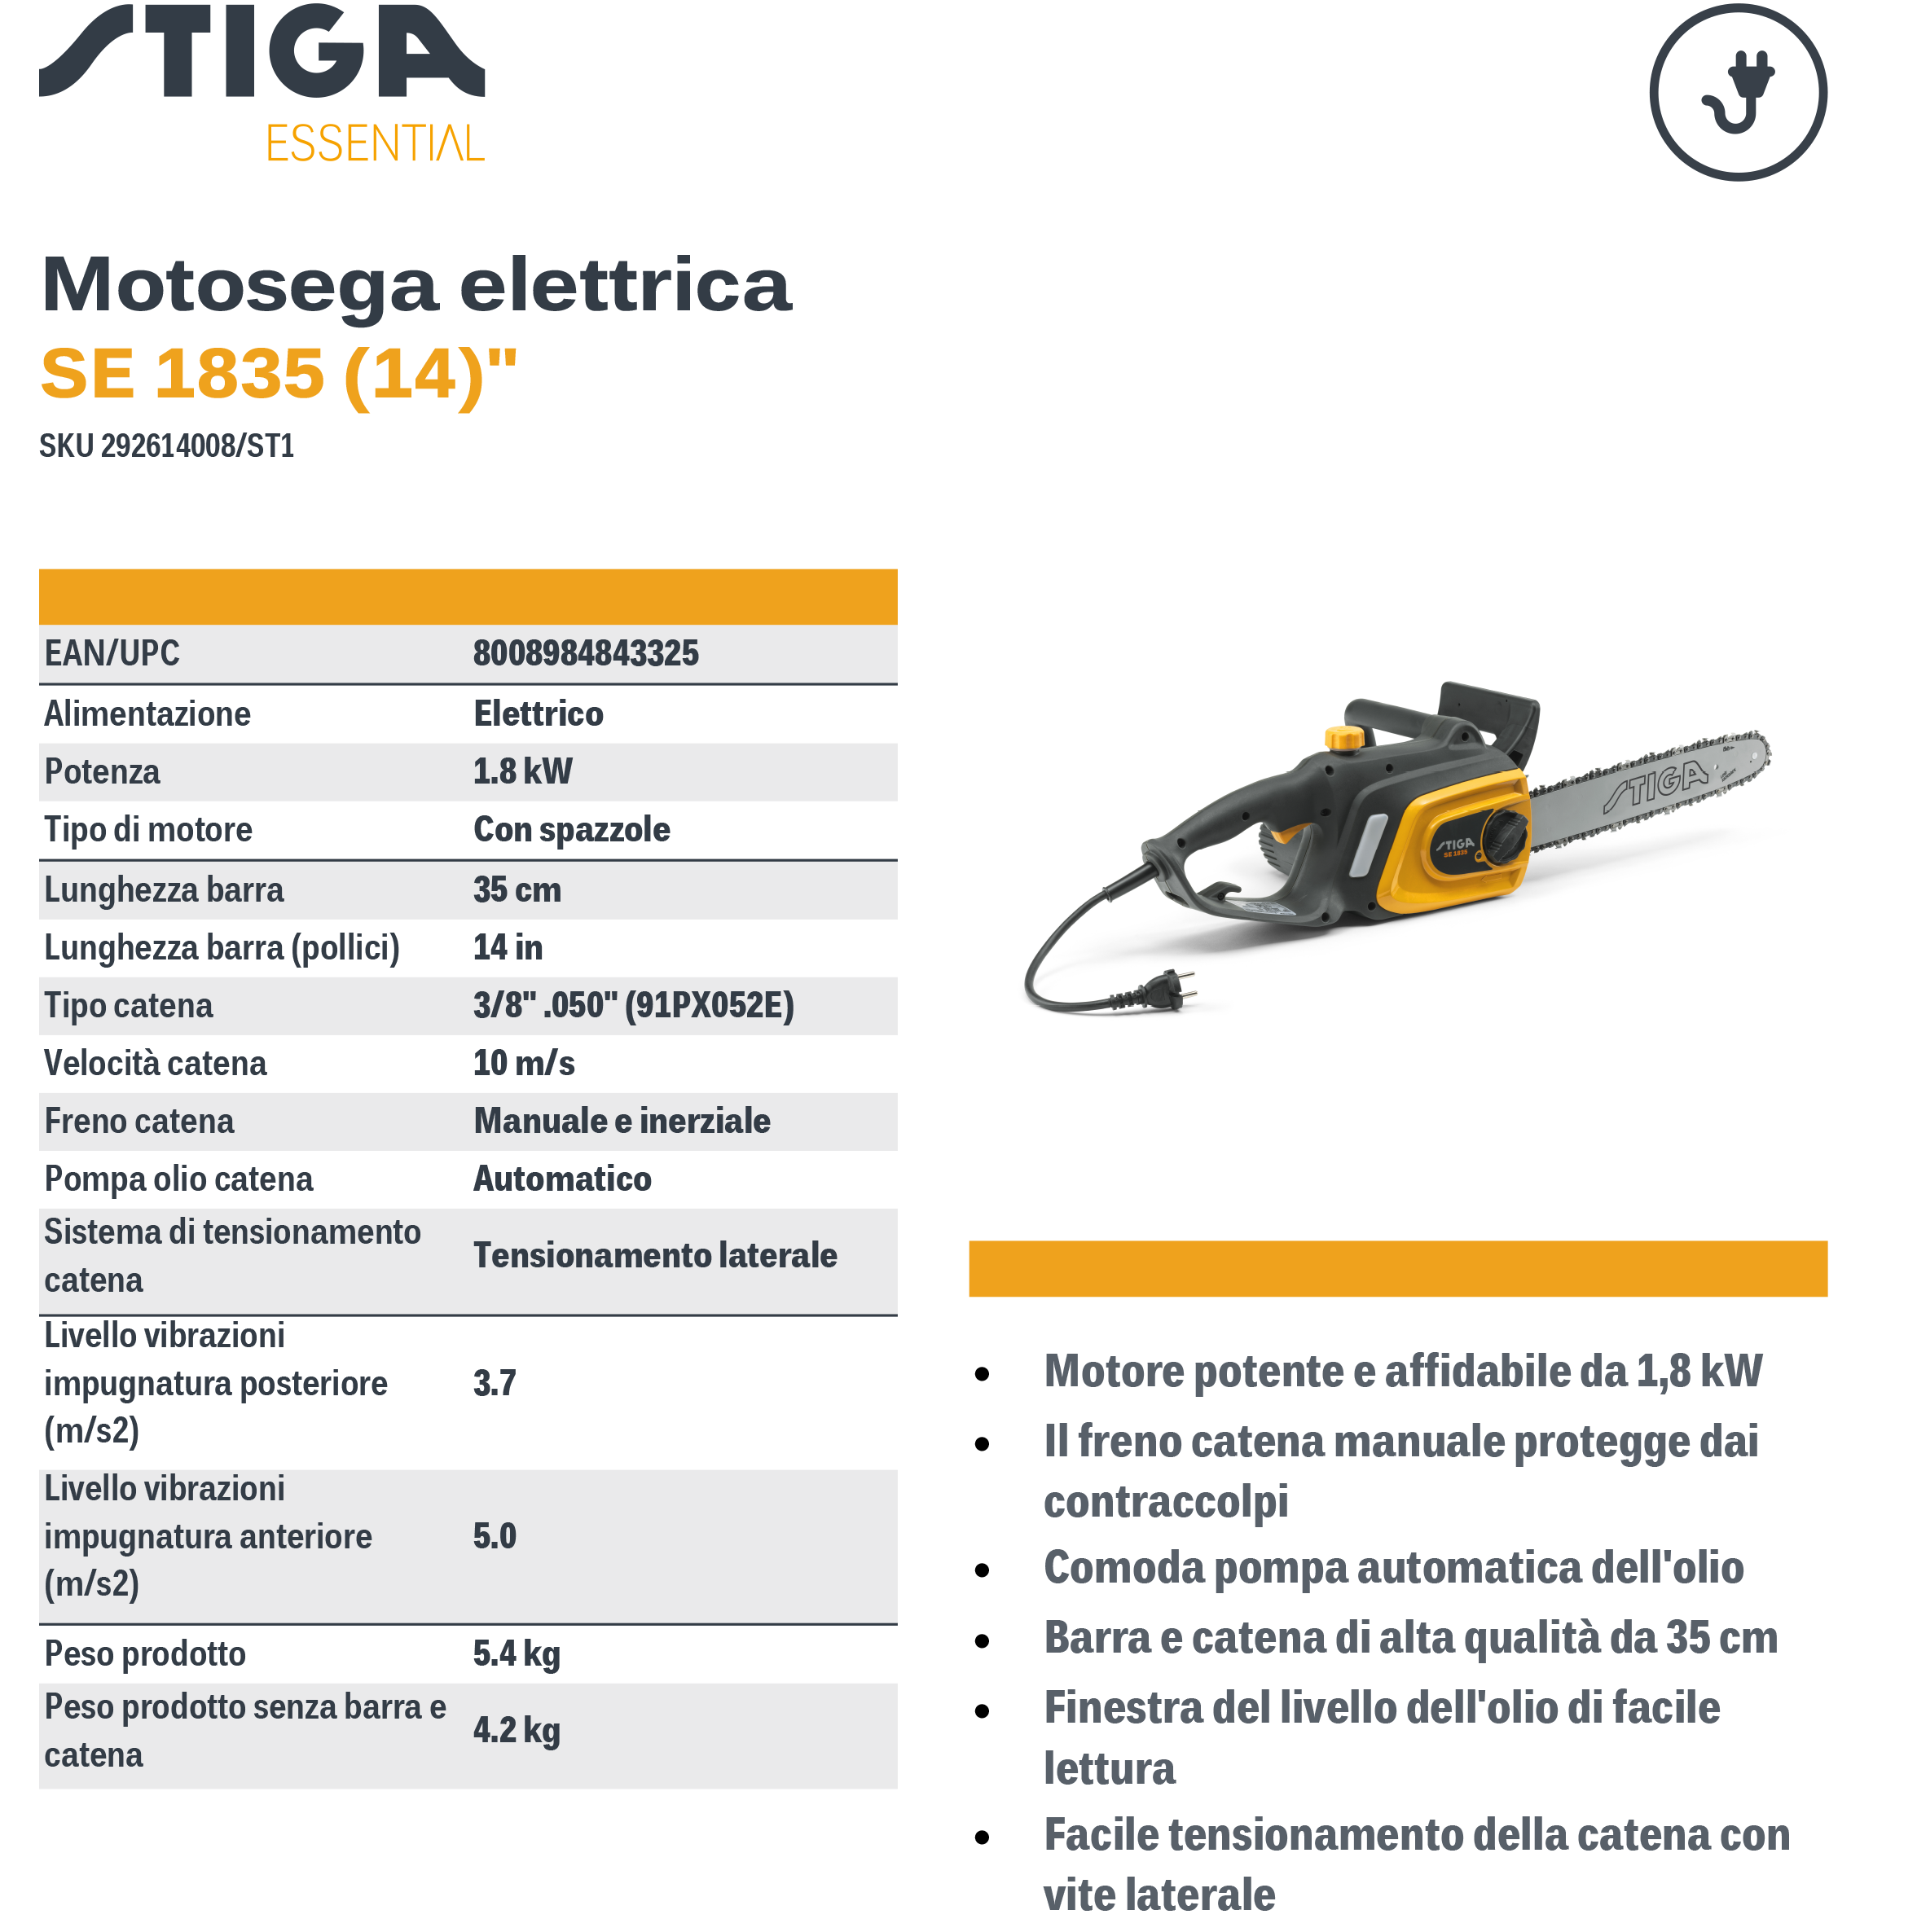 STIGA 1800W electric saw - SE 1835 - 35cm bar